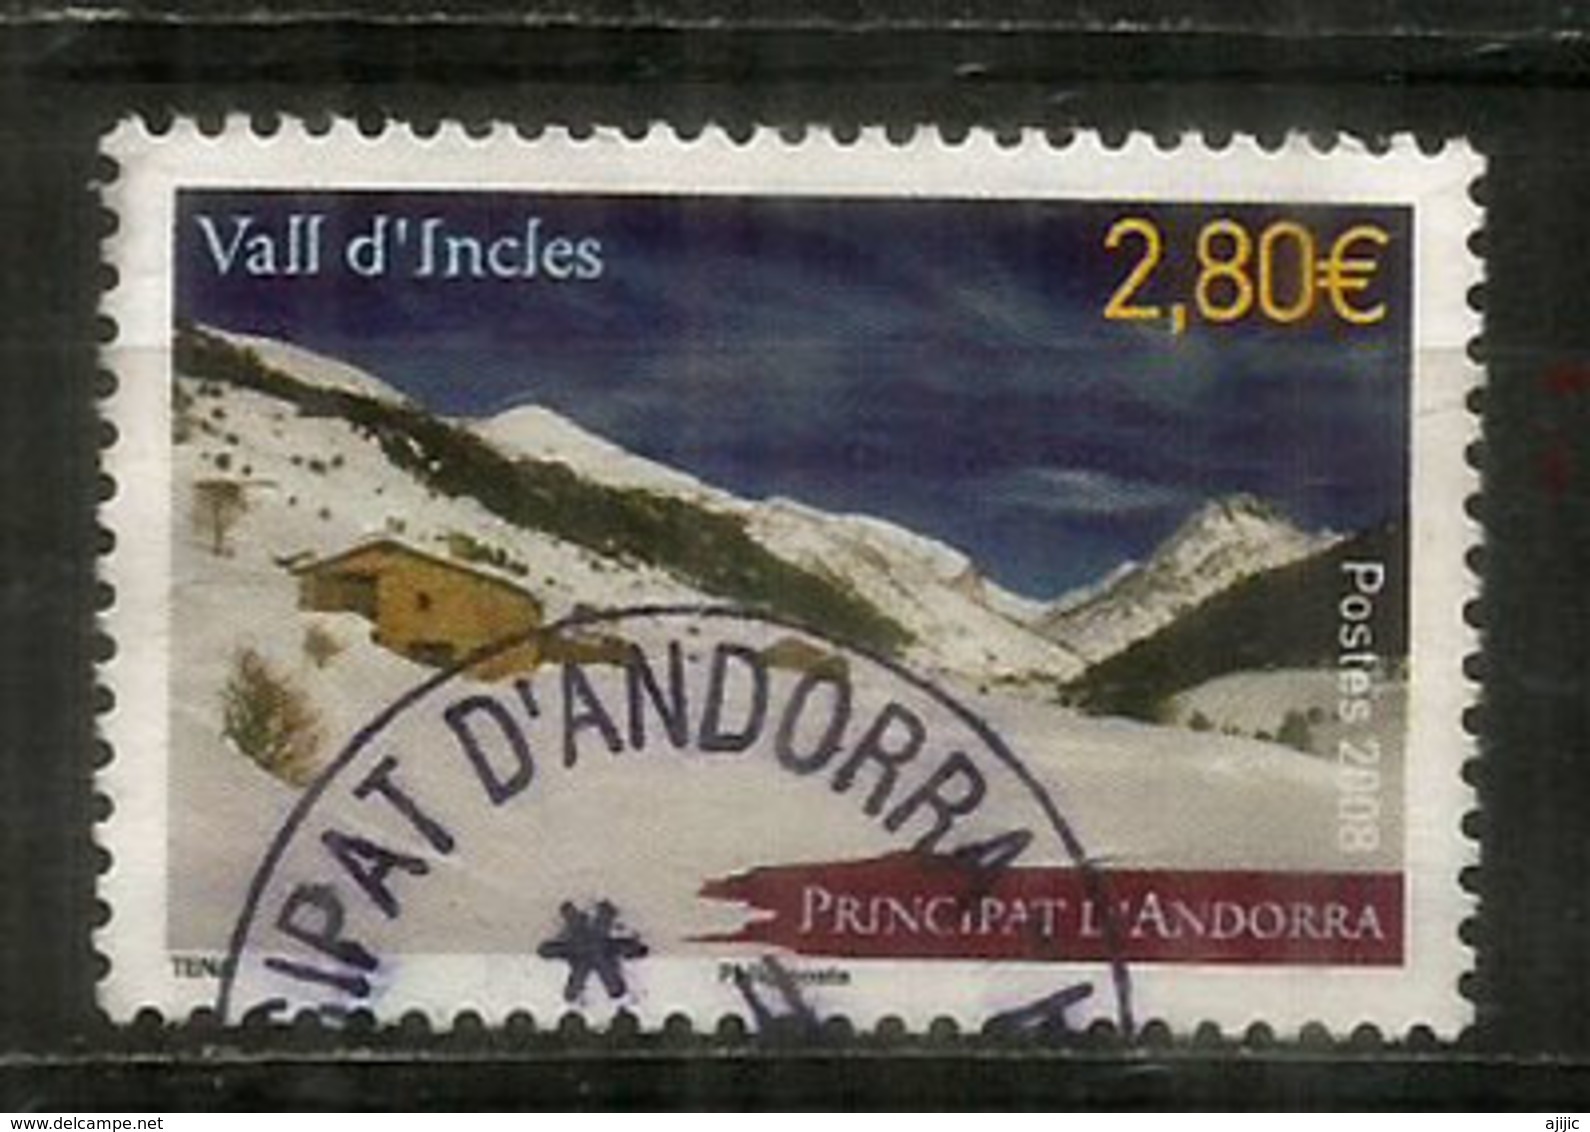 Paysage De La Vallée D'Incles, Parròquia De Canillo, Timbre Haute Faciale Pour  Recommandée,  Oblitéré.   1 ère Qualité - Used Stamps